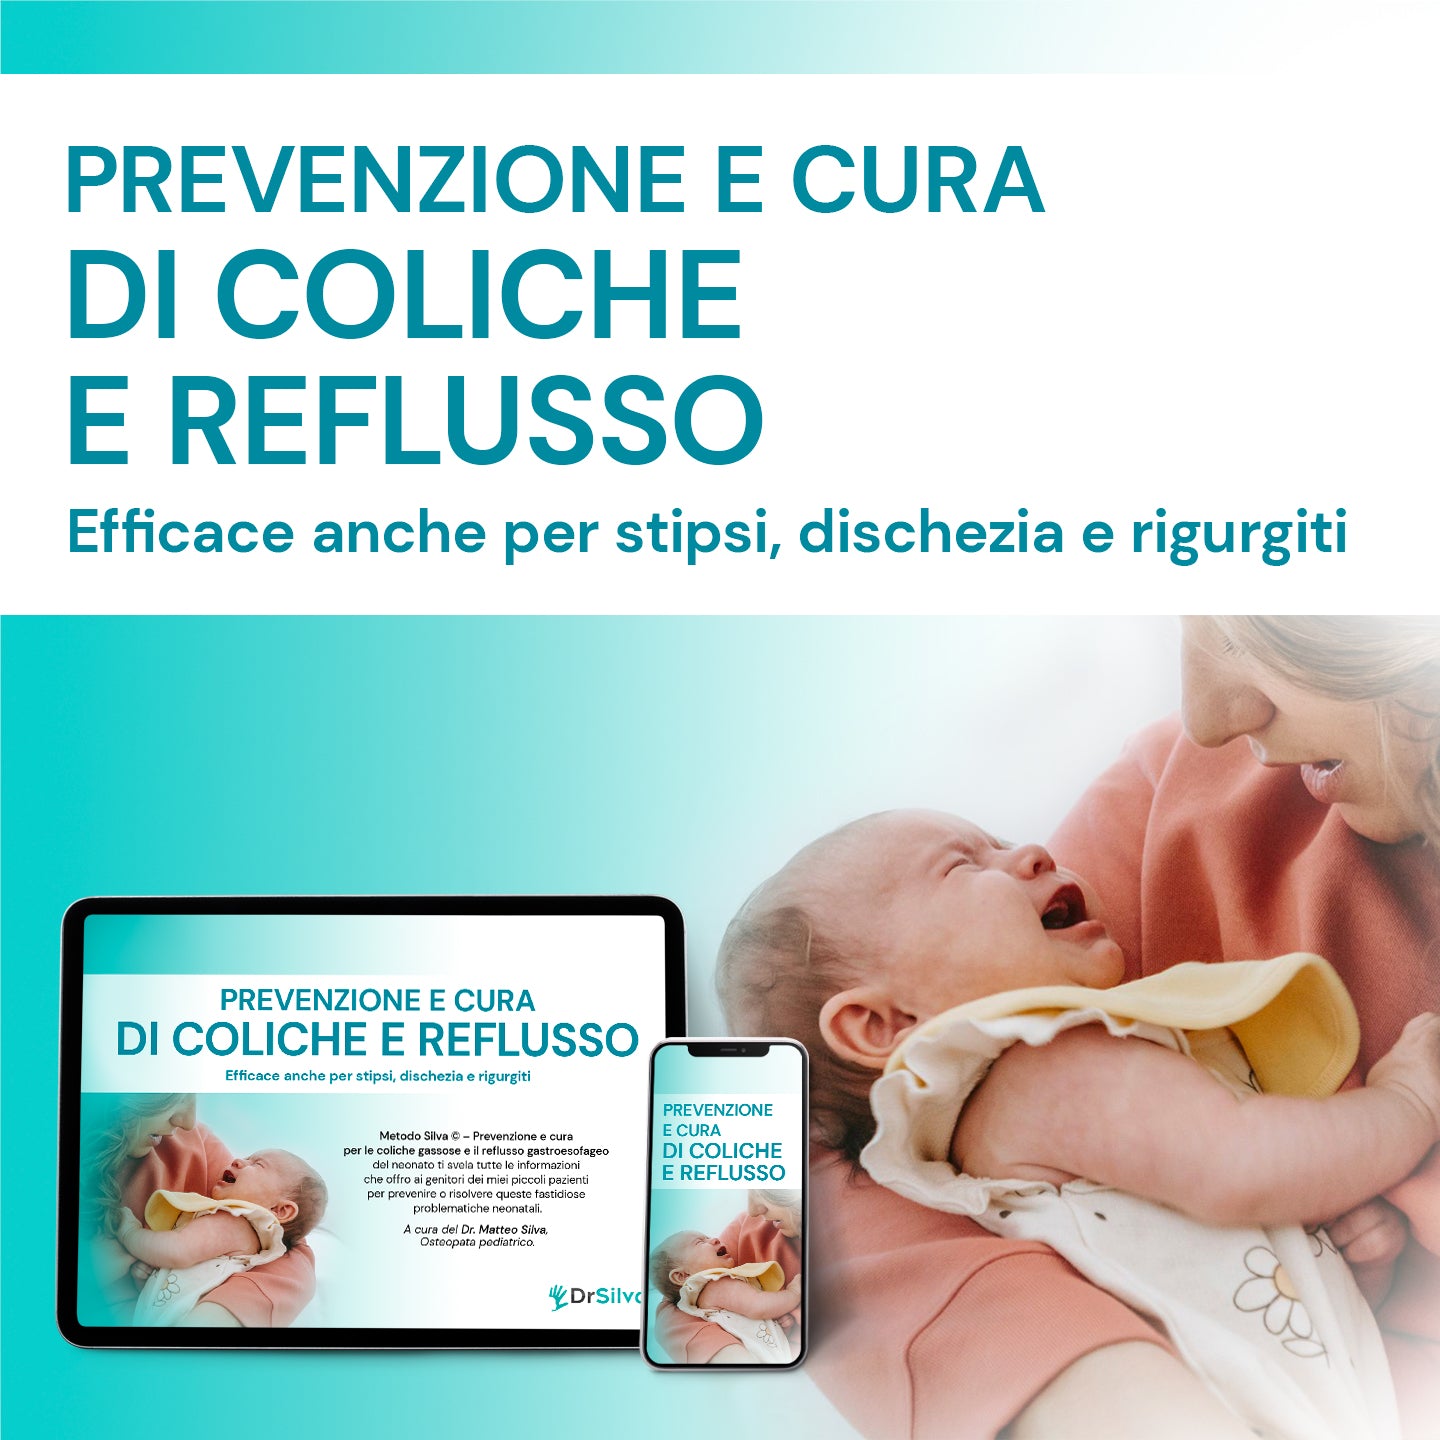 http://dr-silva.com/cdn/shop/products/prevenzione-cura-coliche-reflusso.psd.jpg?v=1679572429